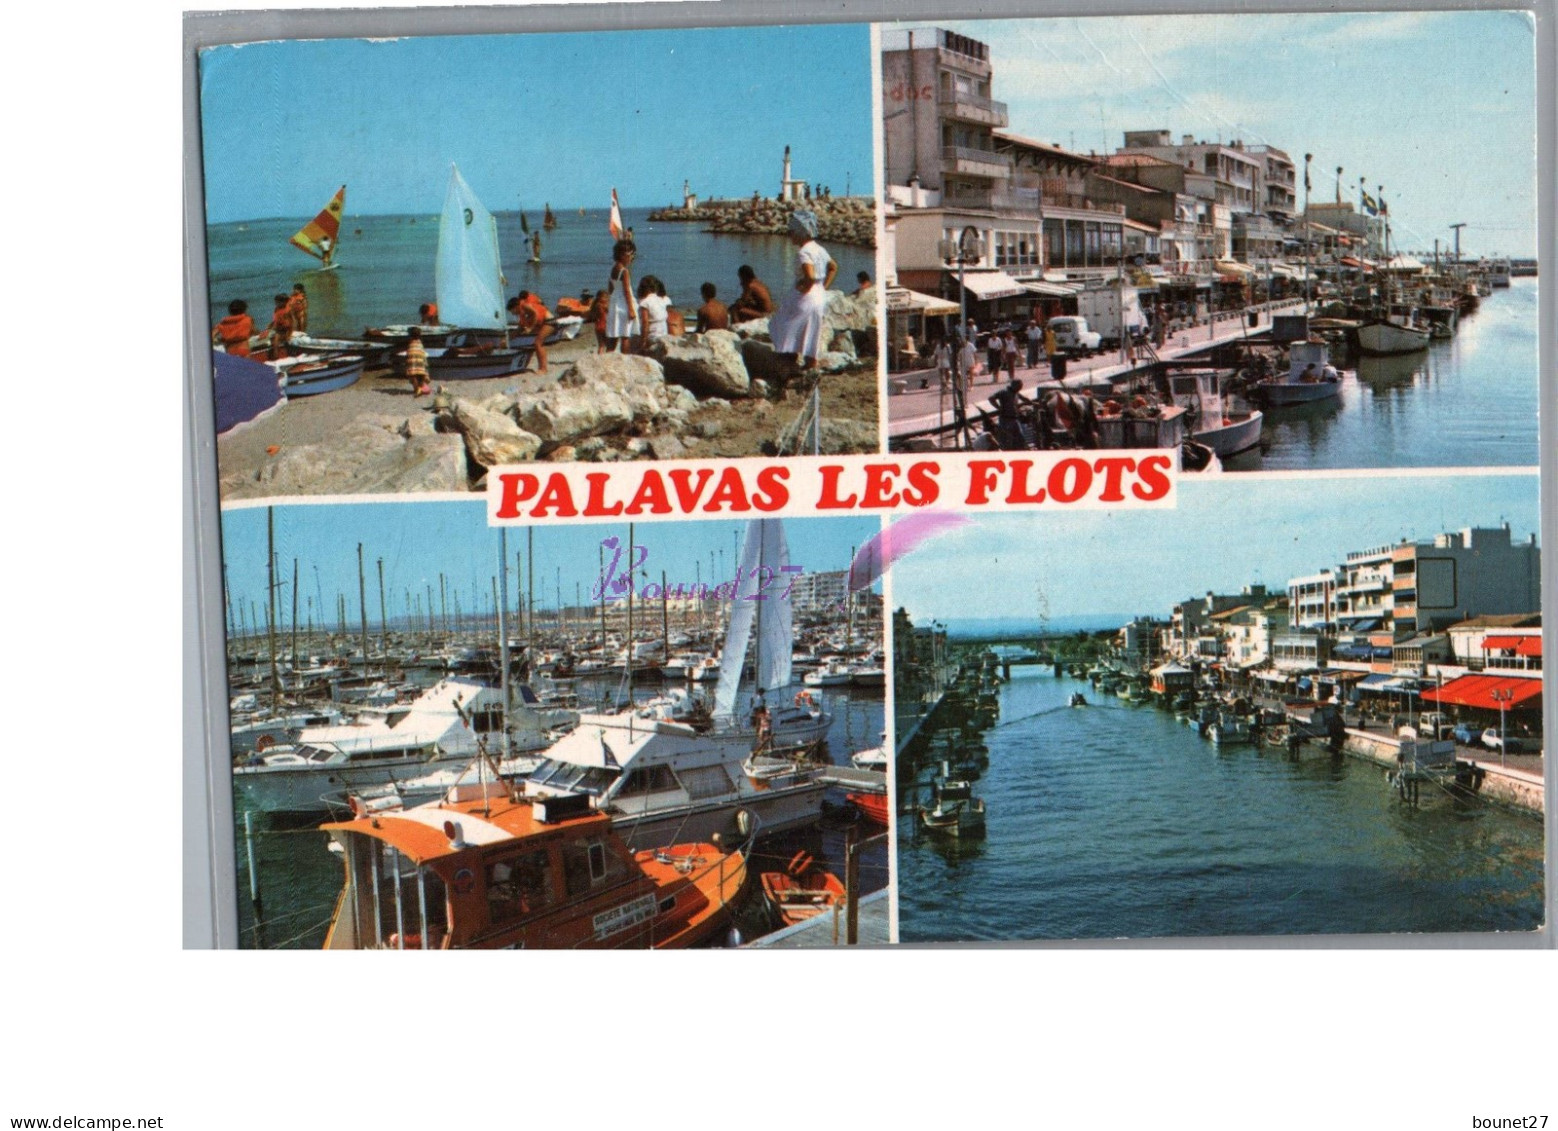 PALAVAS LES FLOTS 34 - La Plage Le Canal Le Port De Plaisance Bâteau Voilier 1988 - Palavas Les Flots